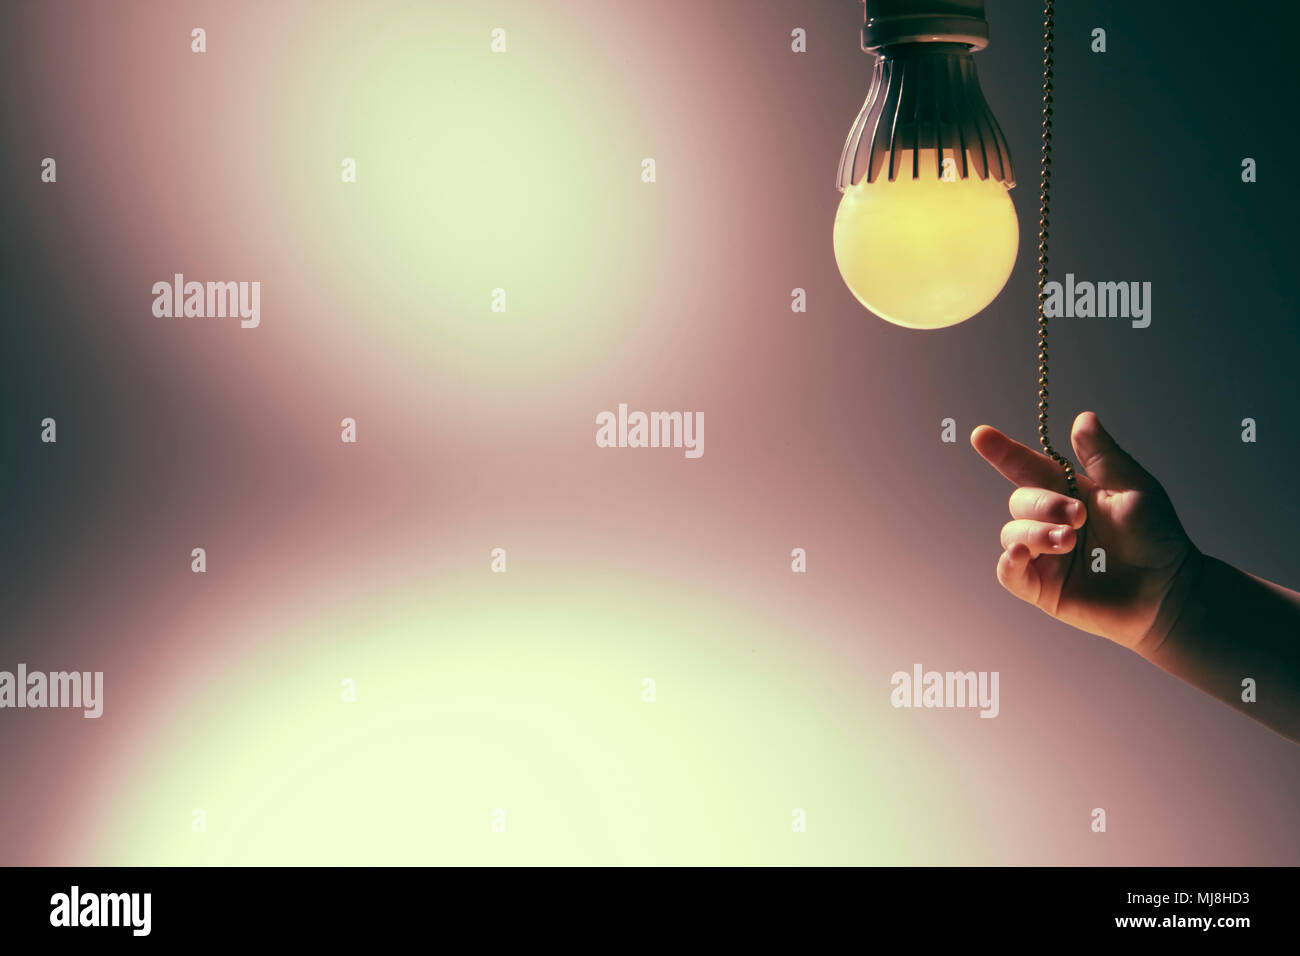 Edison, Erhaltung, Effizienz, Energie, Licht, Leuchten, Leuchten, Beleuchtung, Einschalten, Glanz, Leistung, Spannung, Umwelt, Konzepte, Idee, Stockfoto